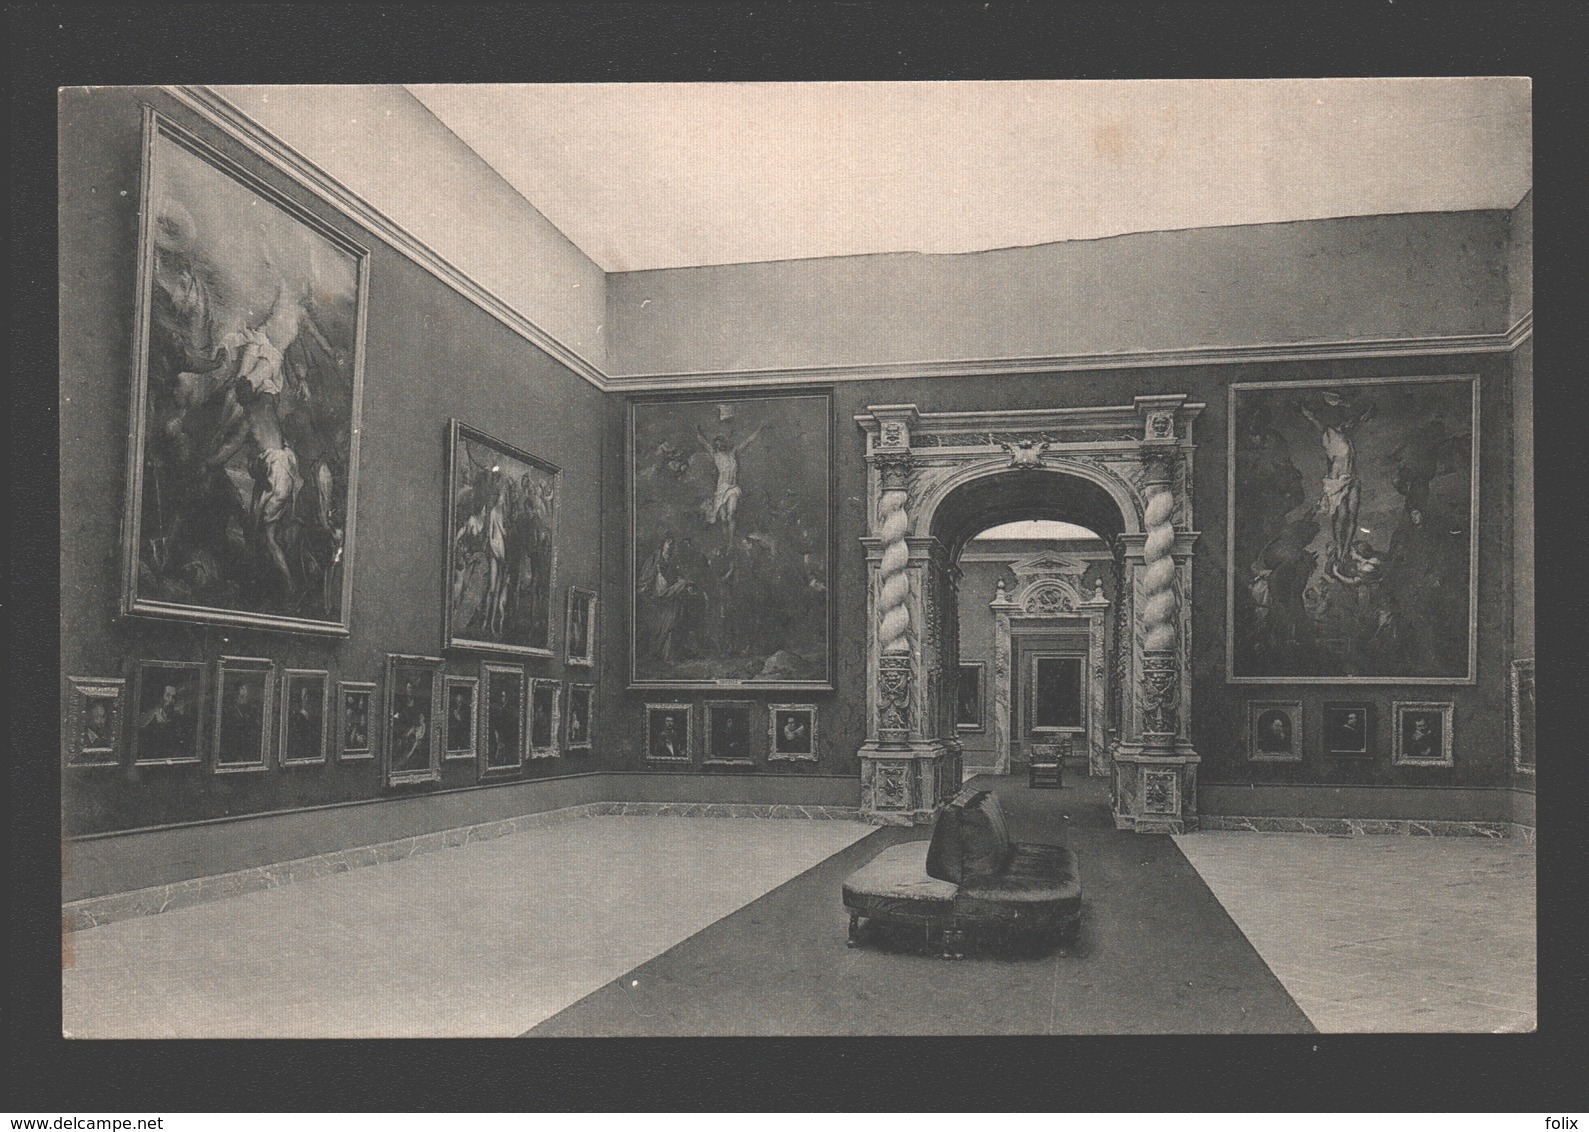 Brussel / Bruxelles - Exposition D'Art Ancien 1910 Le XVIIme Siècle, Palais Du Cinquantenaire - La Grande Salle Van Dyck - Fêtes, événements